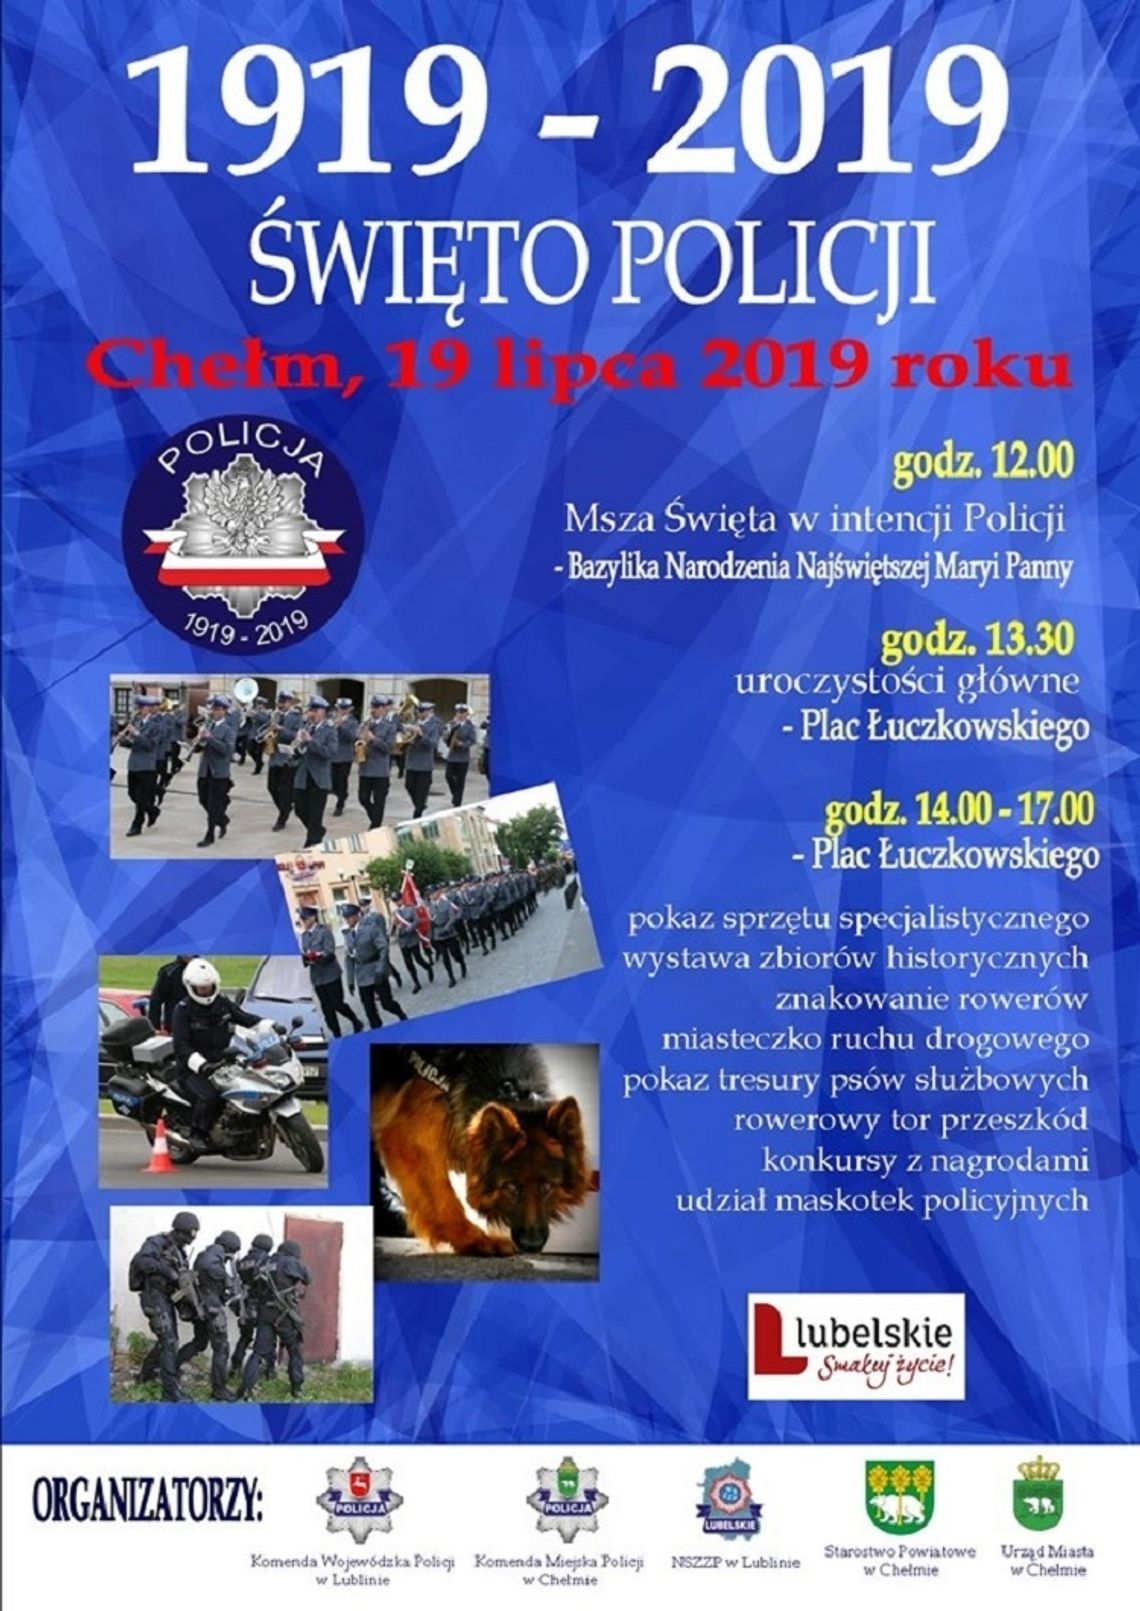 Chełm: Wojewódzka Policja będzie świętować w Chełmie